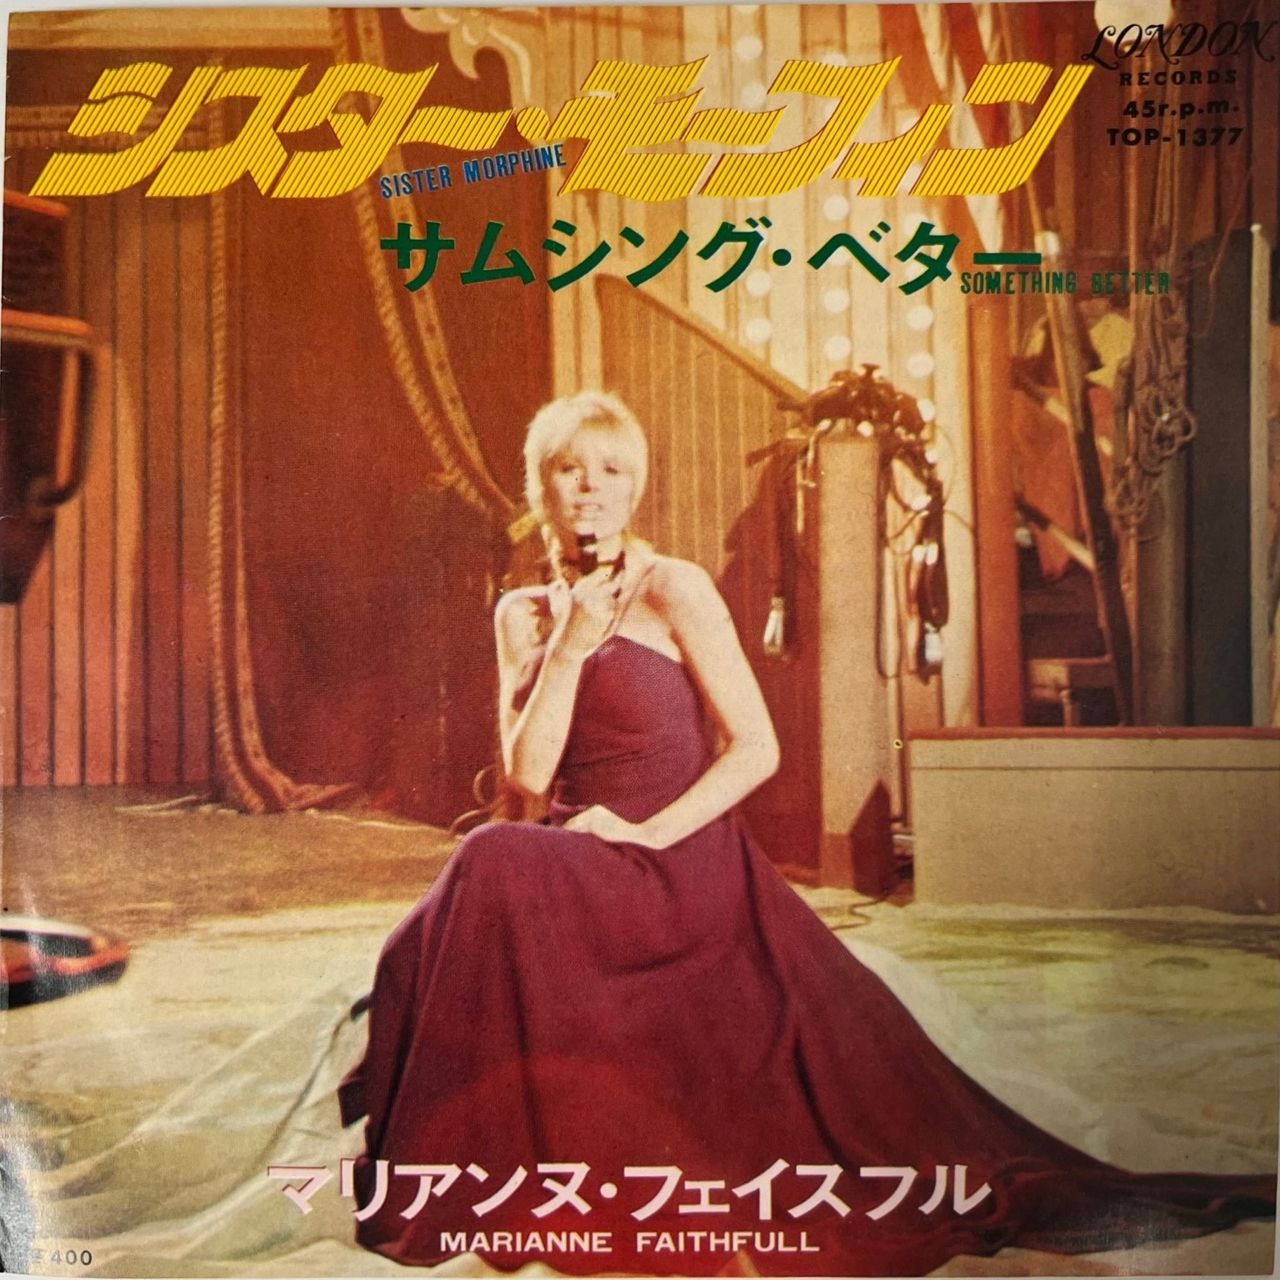 Marianne Faithfull Sister Morphine Japanese 7" vinyl single (7 inch record / 45) TOP-1377